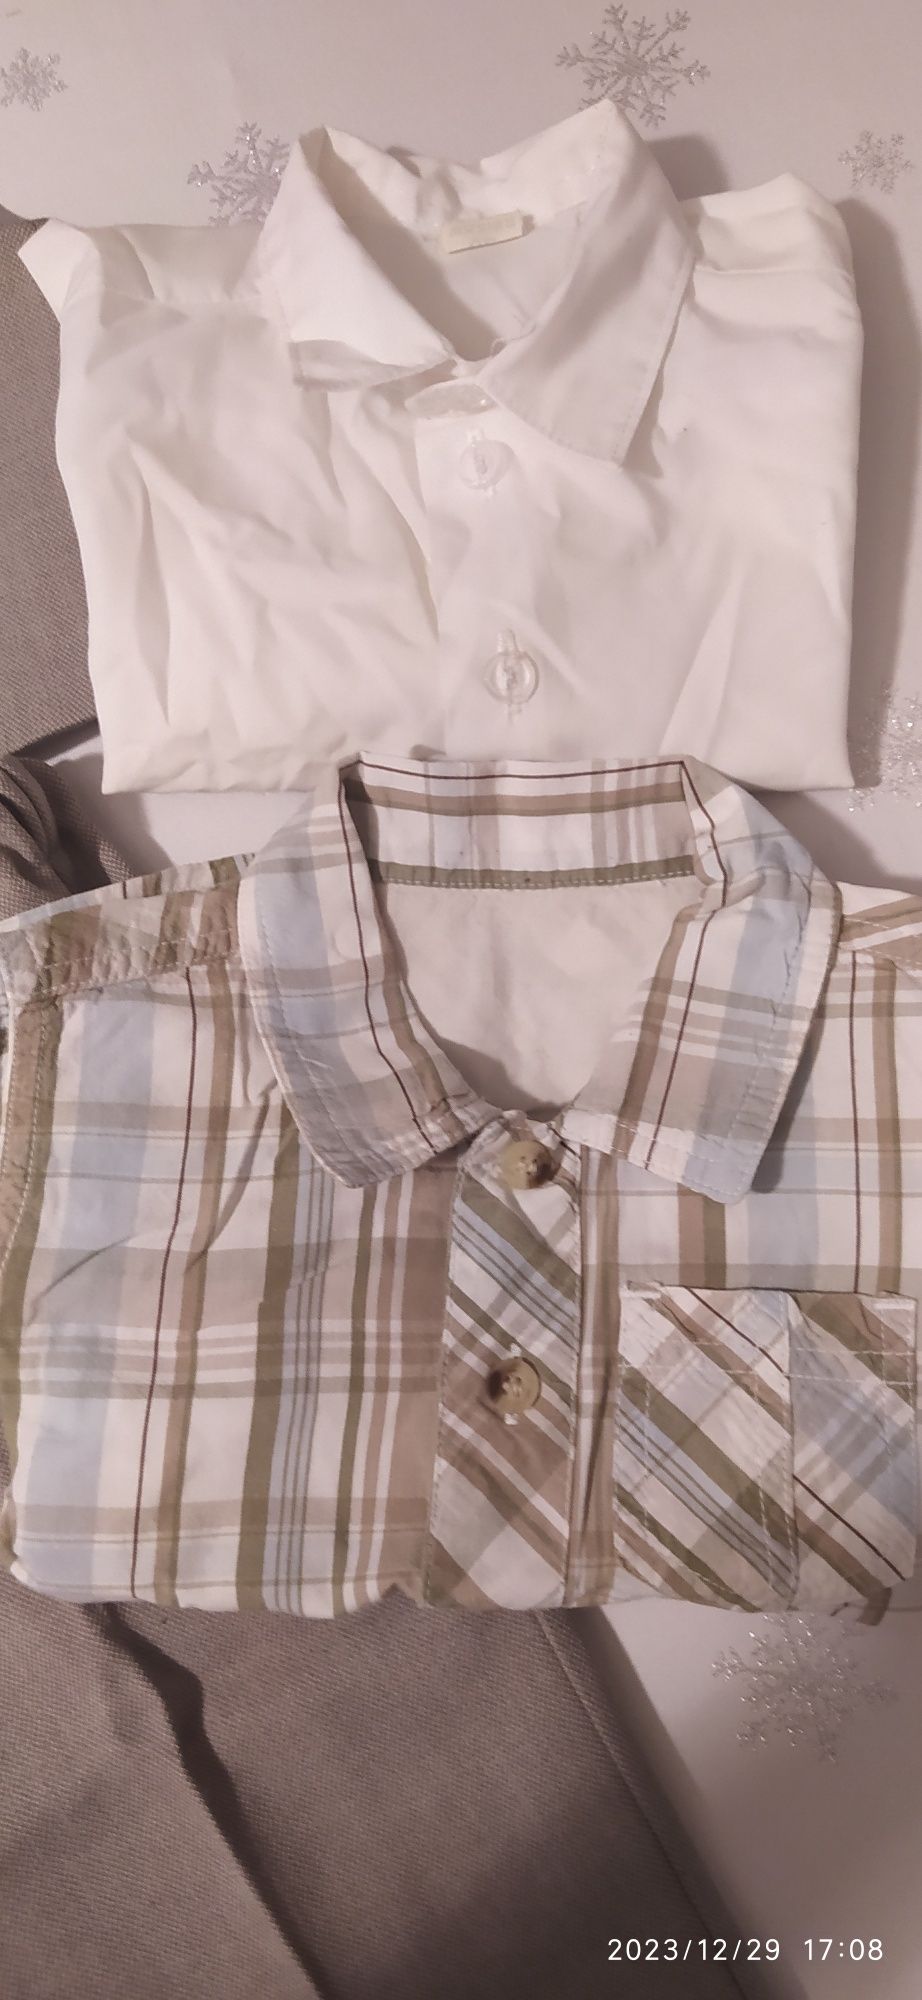 Garnitur, kamizelka, spodnie szare rozmiar 80, dwie koszule